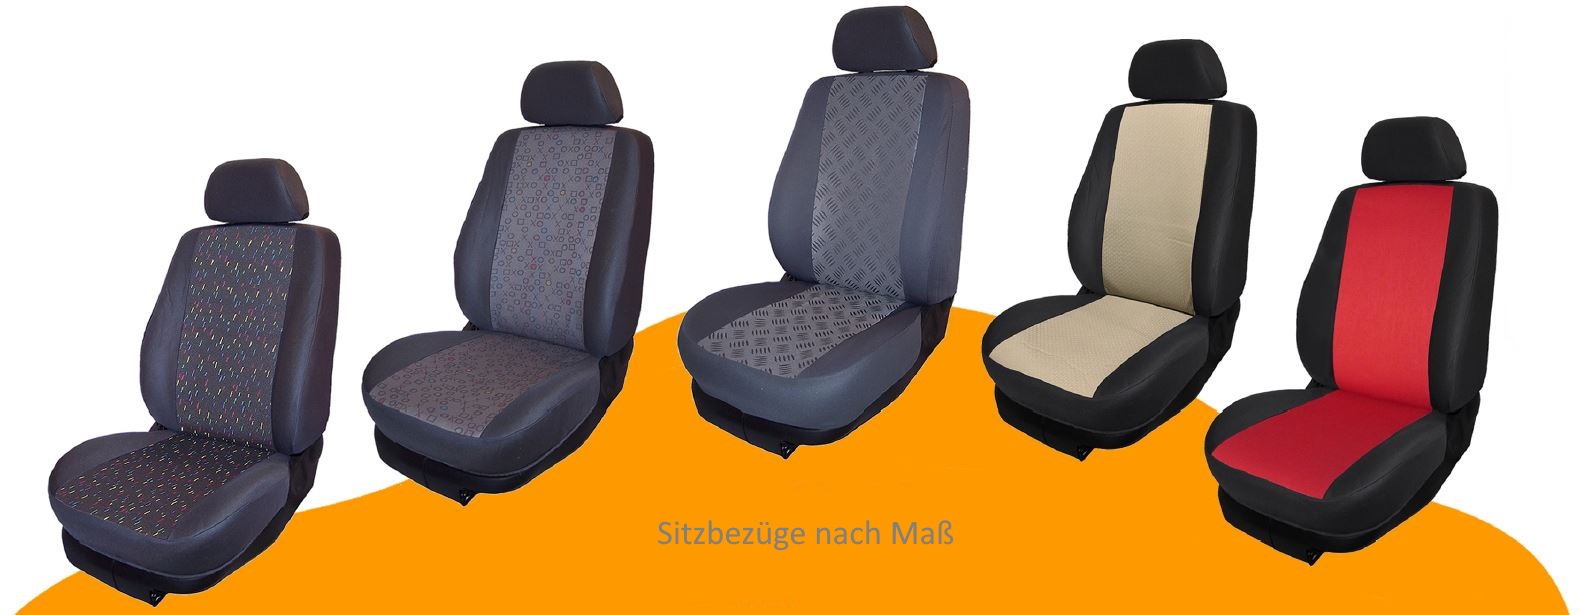 Sitzbezüge Maßanfertigung W212 Kombi gebraucht Nur Sitzbereich in